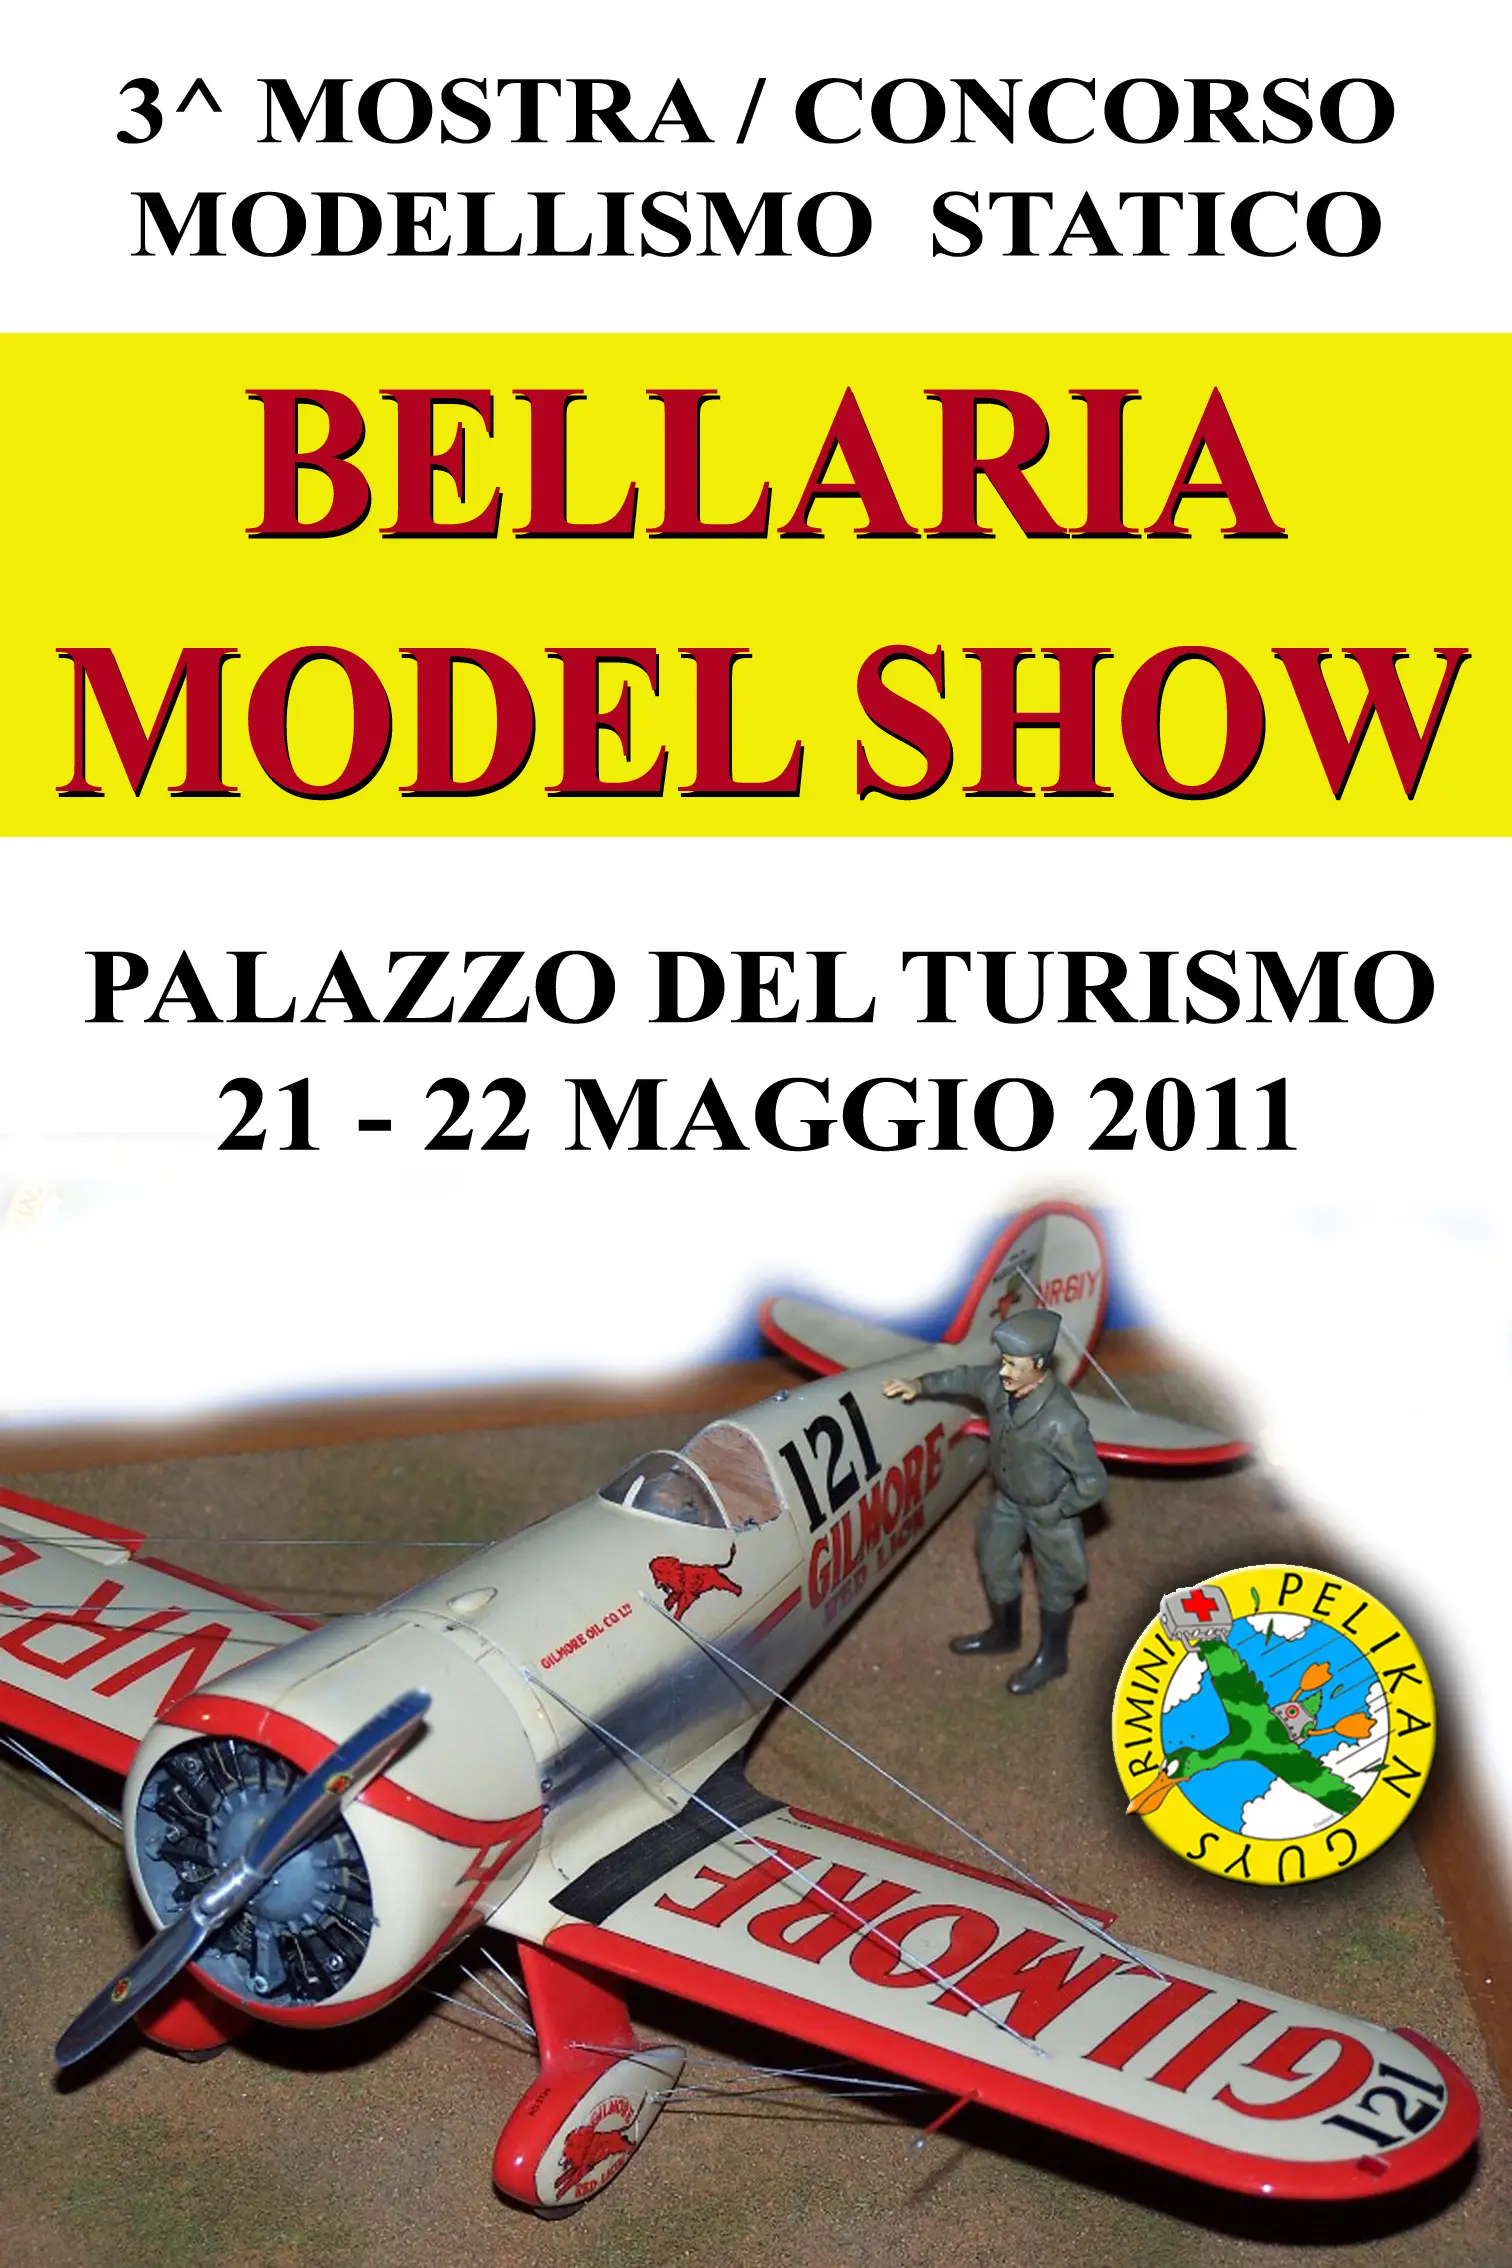 BELLARIA MODEL SHOW modellismo statico 21-22 maggio 11 - Bellaria Igea  Marina Vacanze: Mare Sport Congressi Eventi